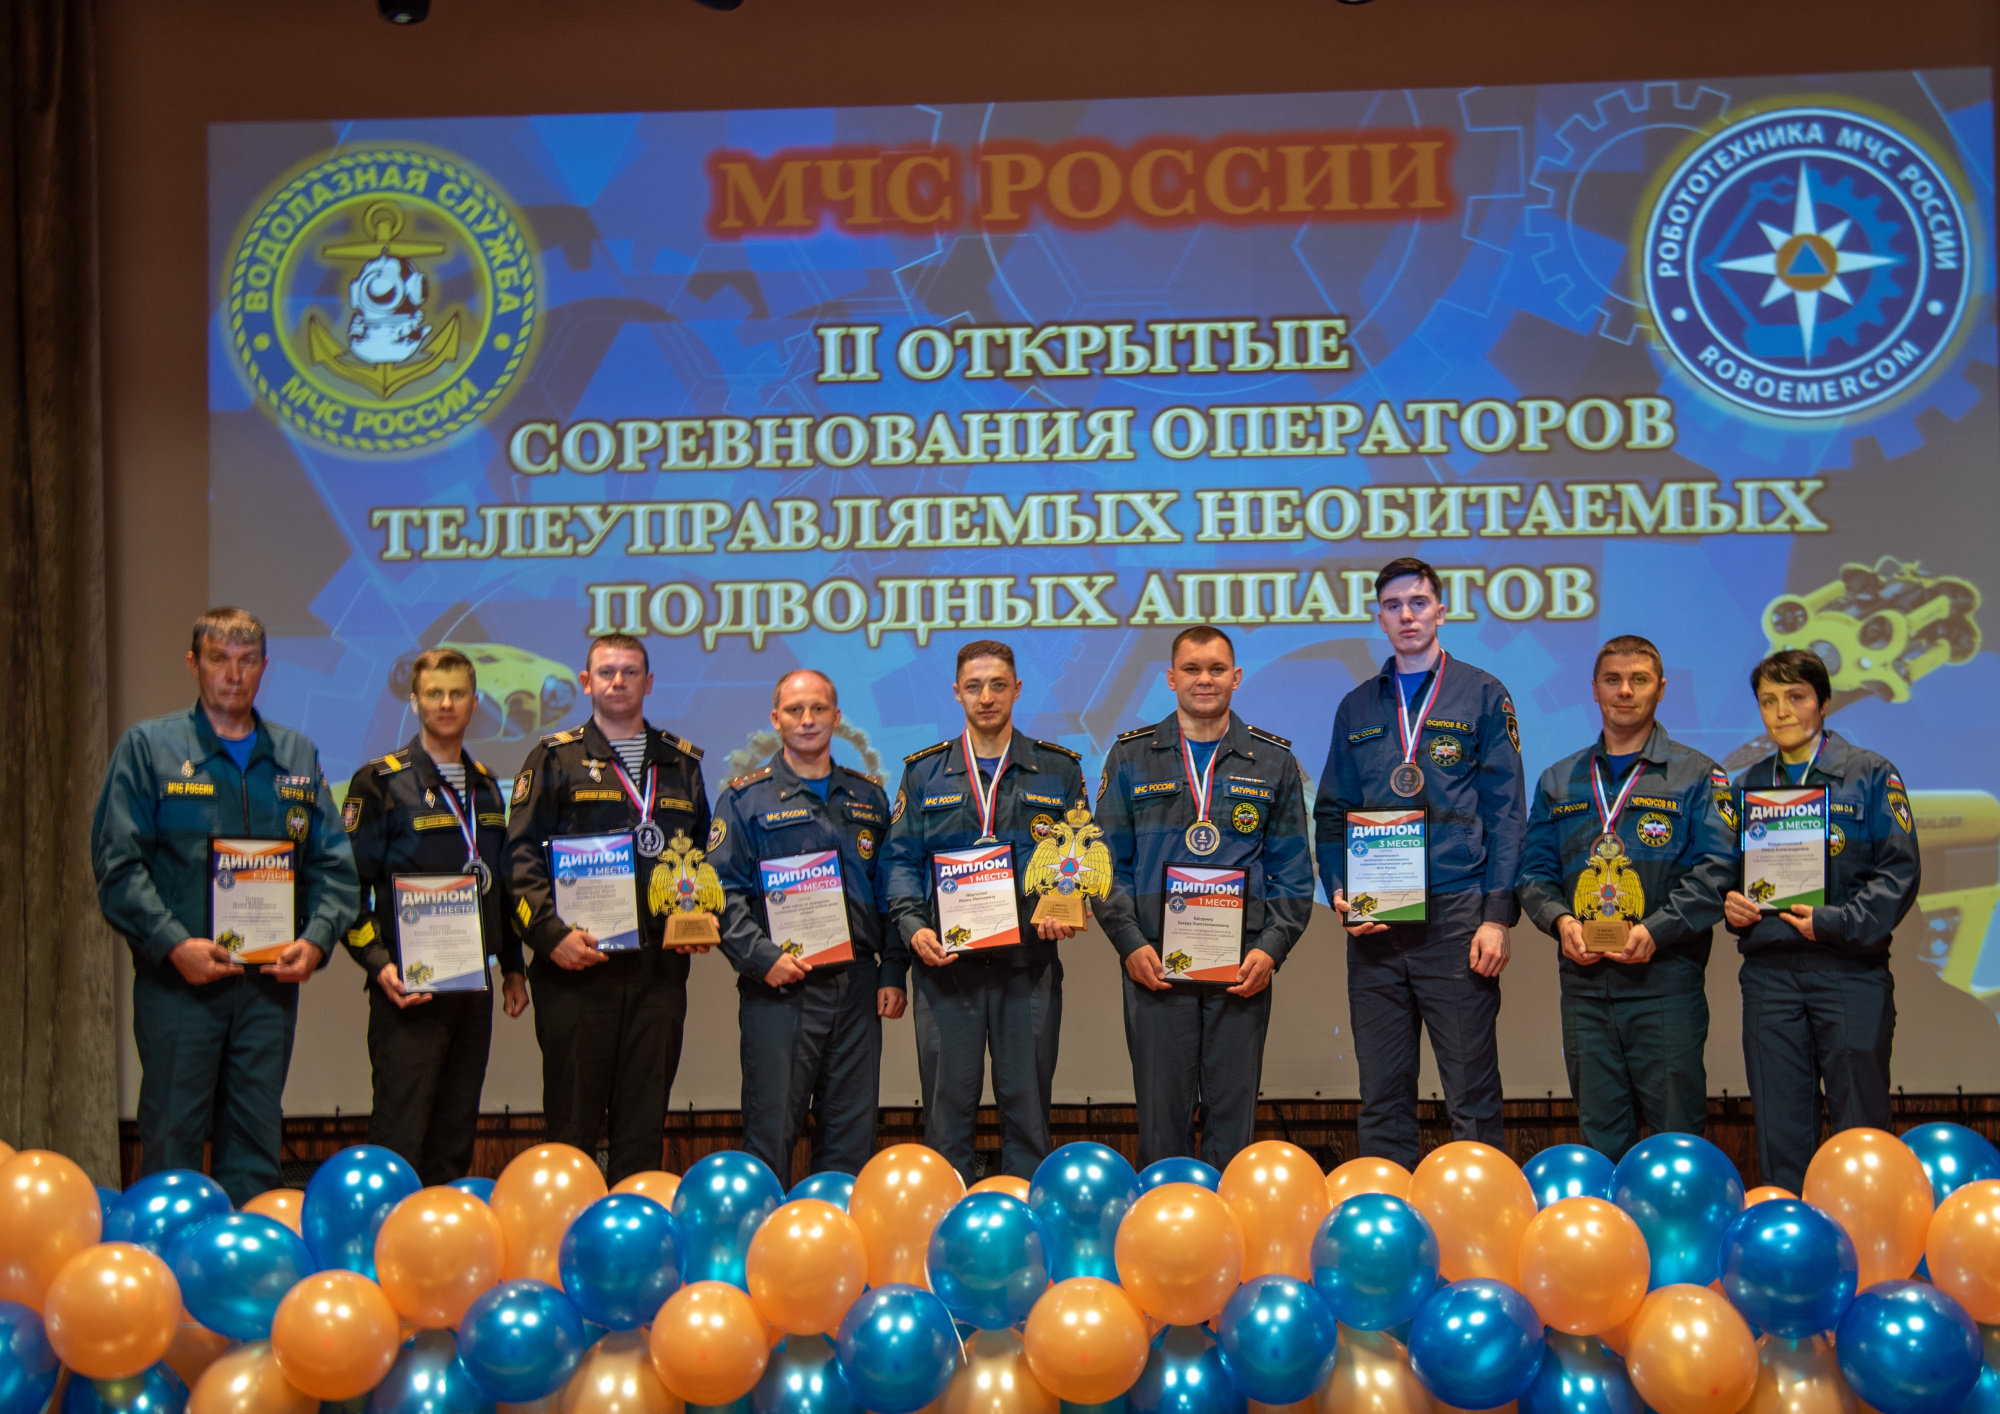 Определены-победители-ii-Открытых-соревнований-операторов-телеуправляемых-необитаемых-подводных-аппаратов-МЧС-России